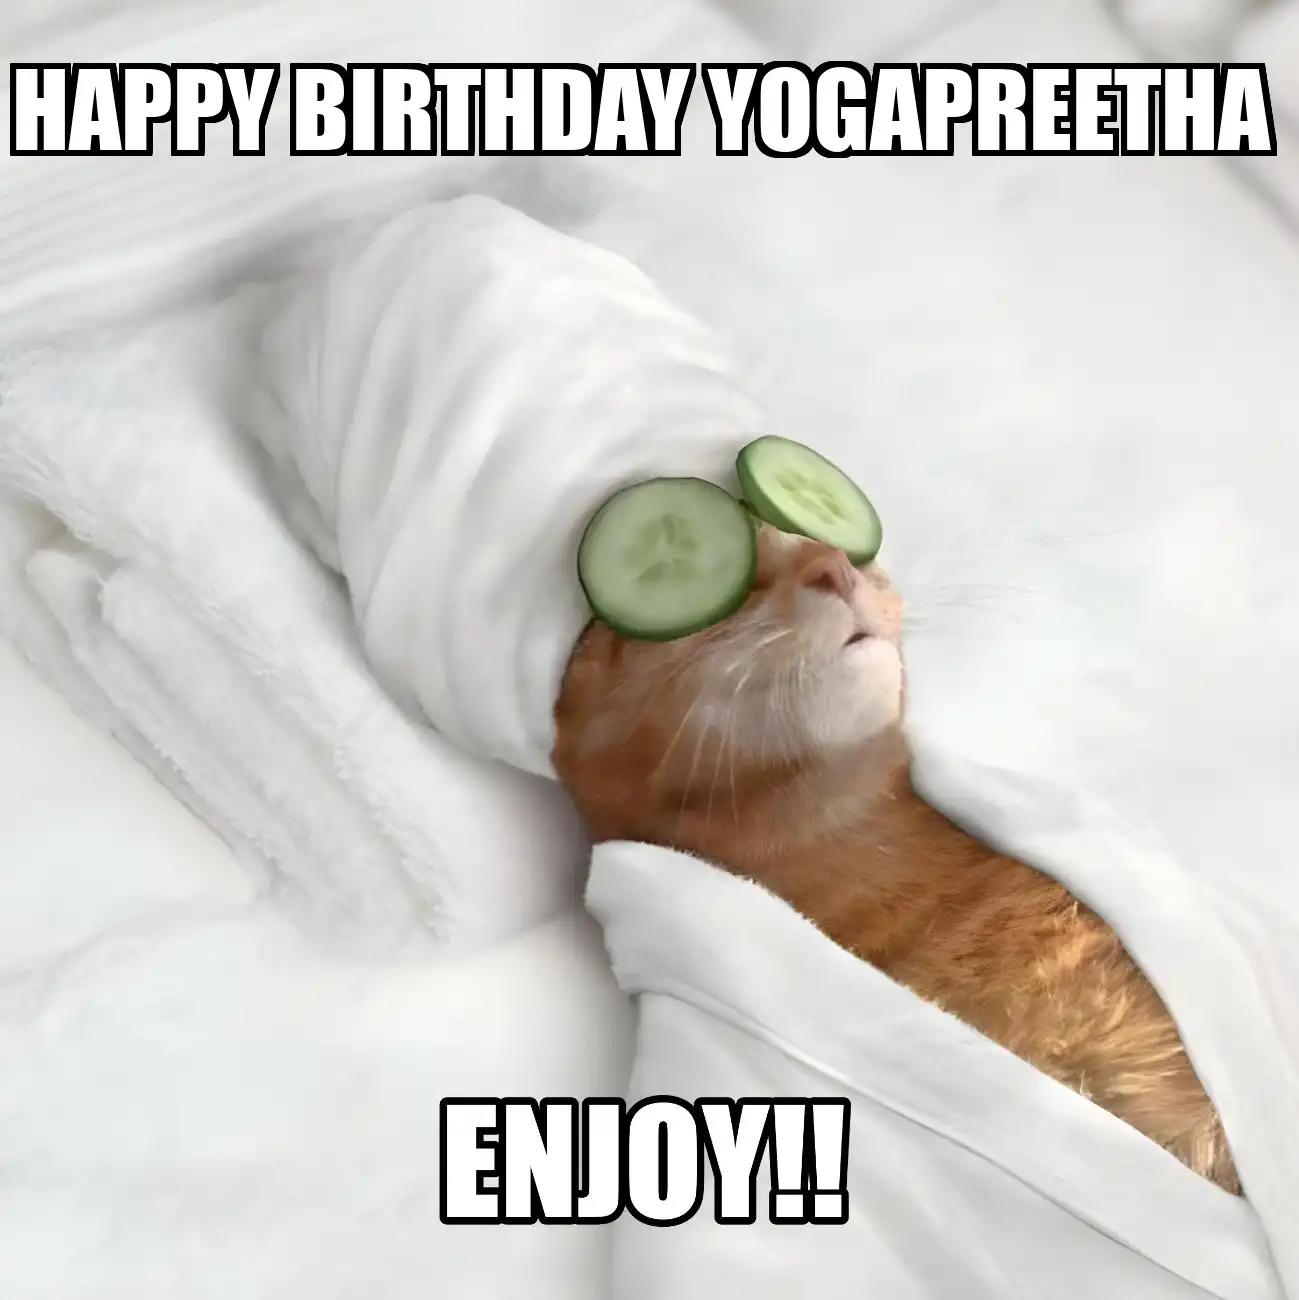 Happy Birthday Yogapreetha Enjoy Cat Meme